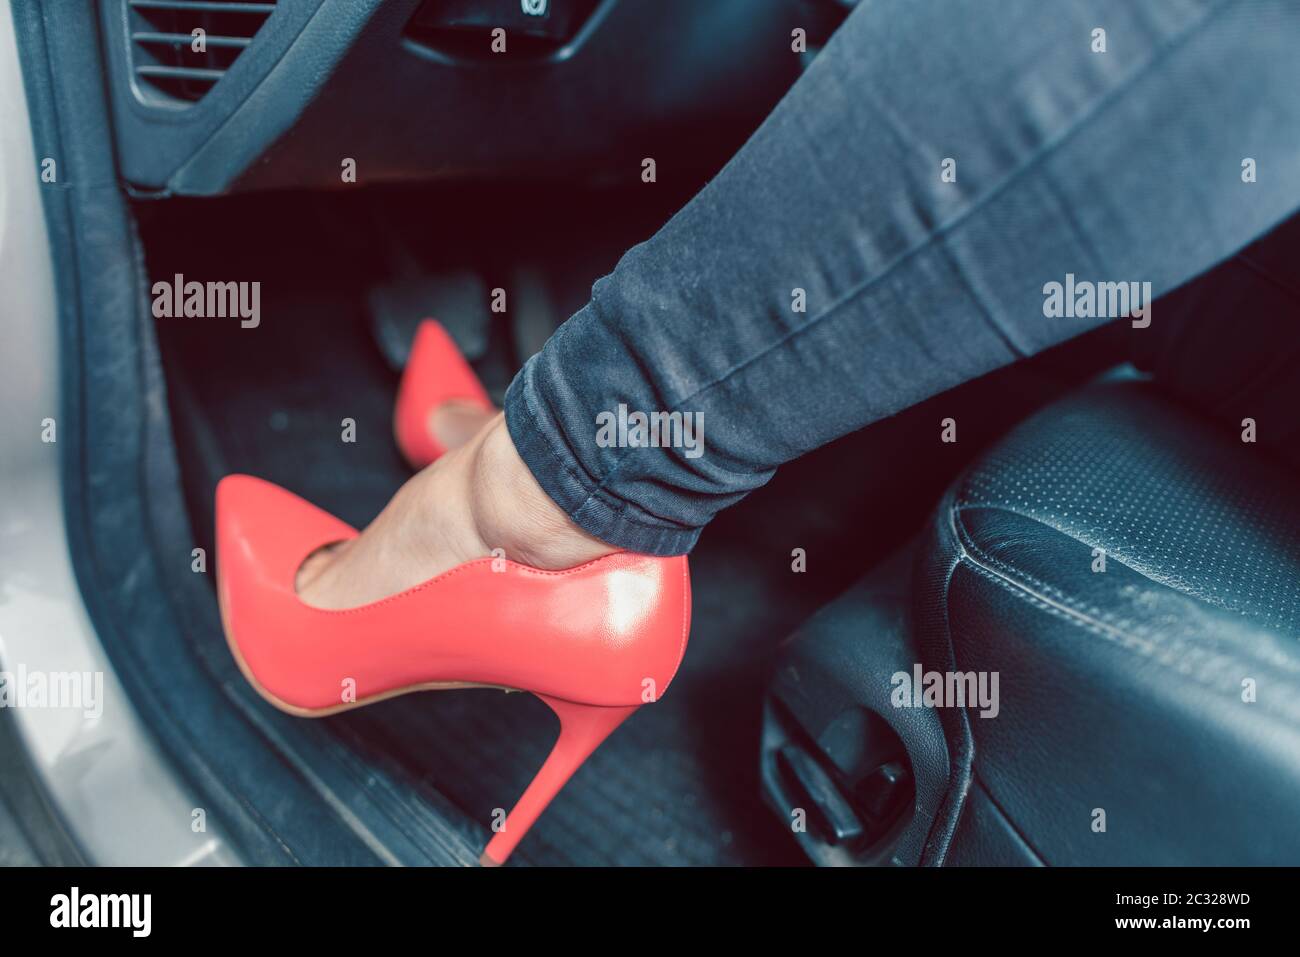 Frau, die ein Auto auf unsichere Weise mit roten hohen Schuhen fährt  Stockfotografie - Alamy